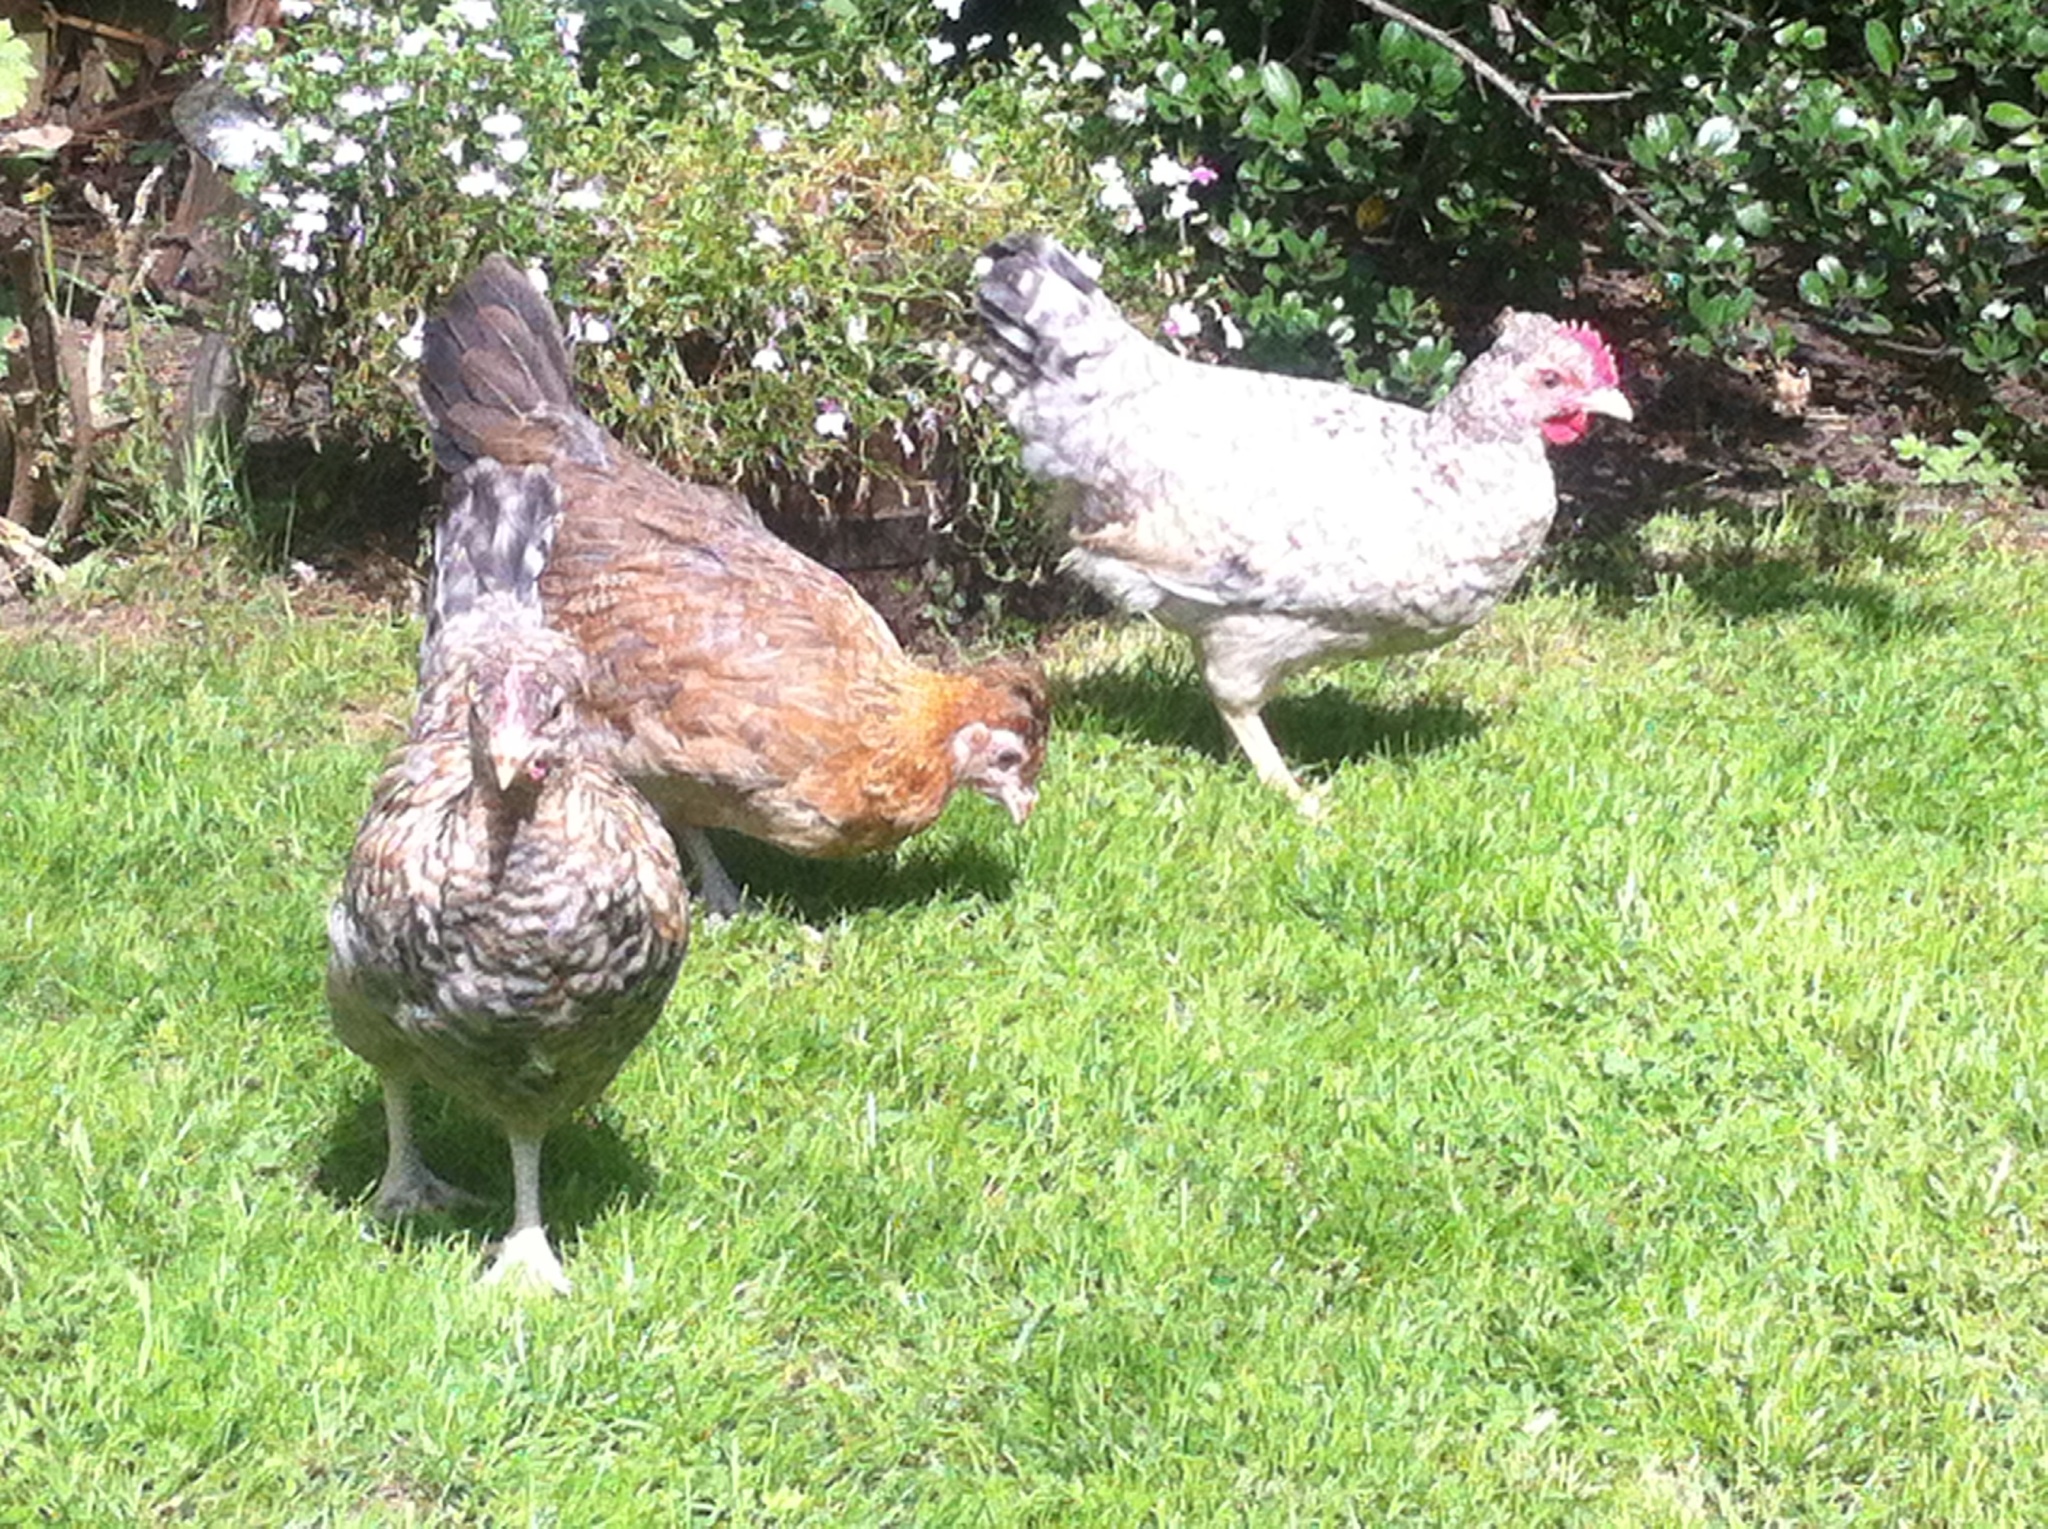 Three white chickens on grass